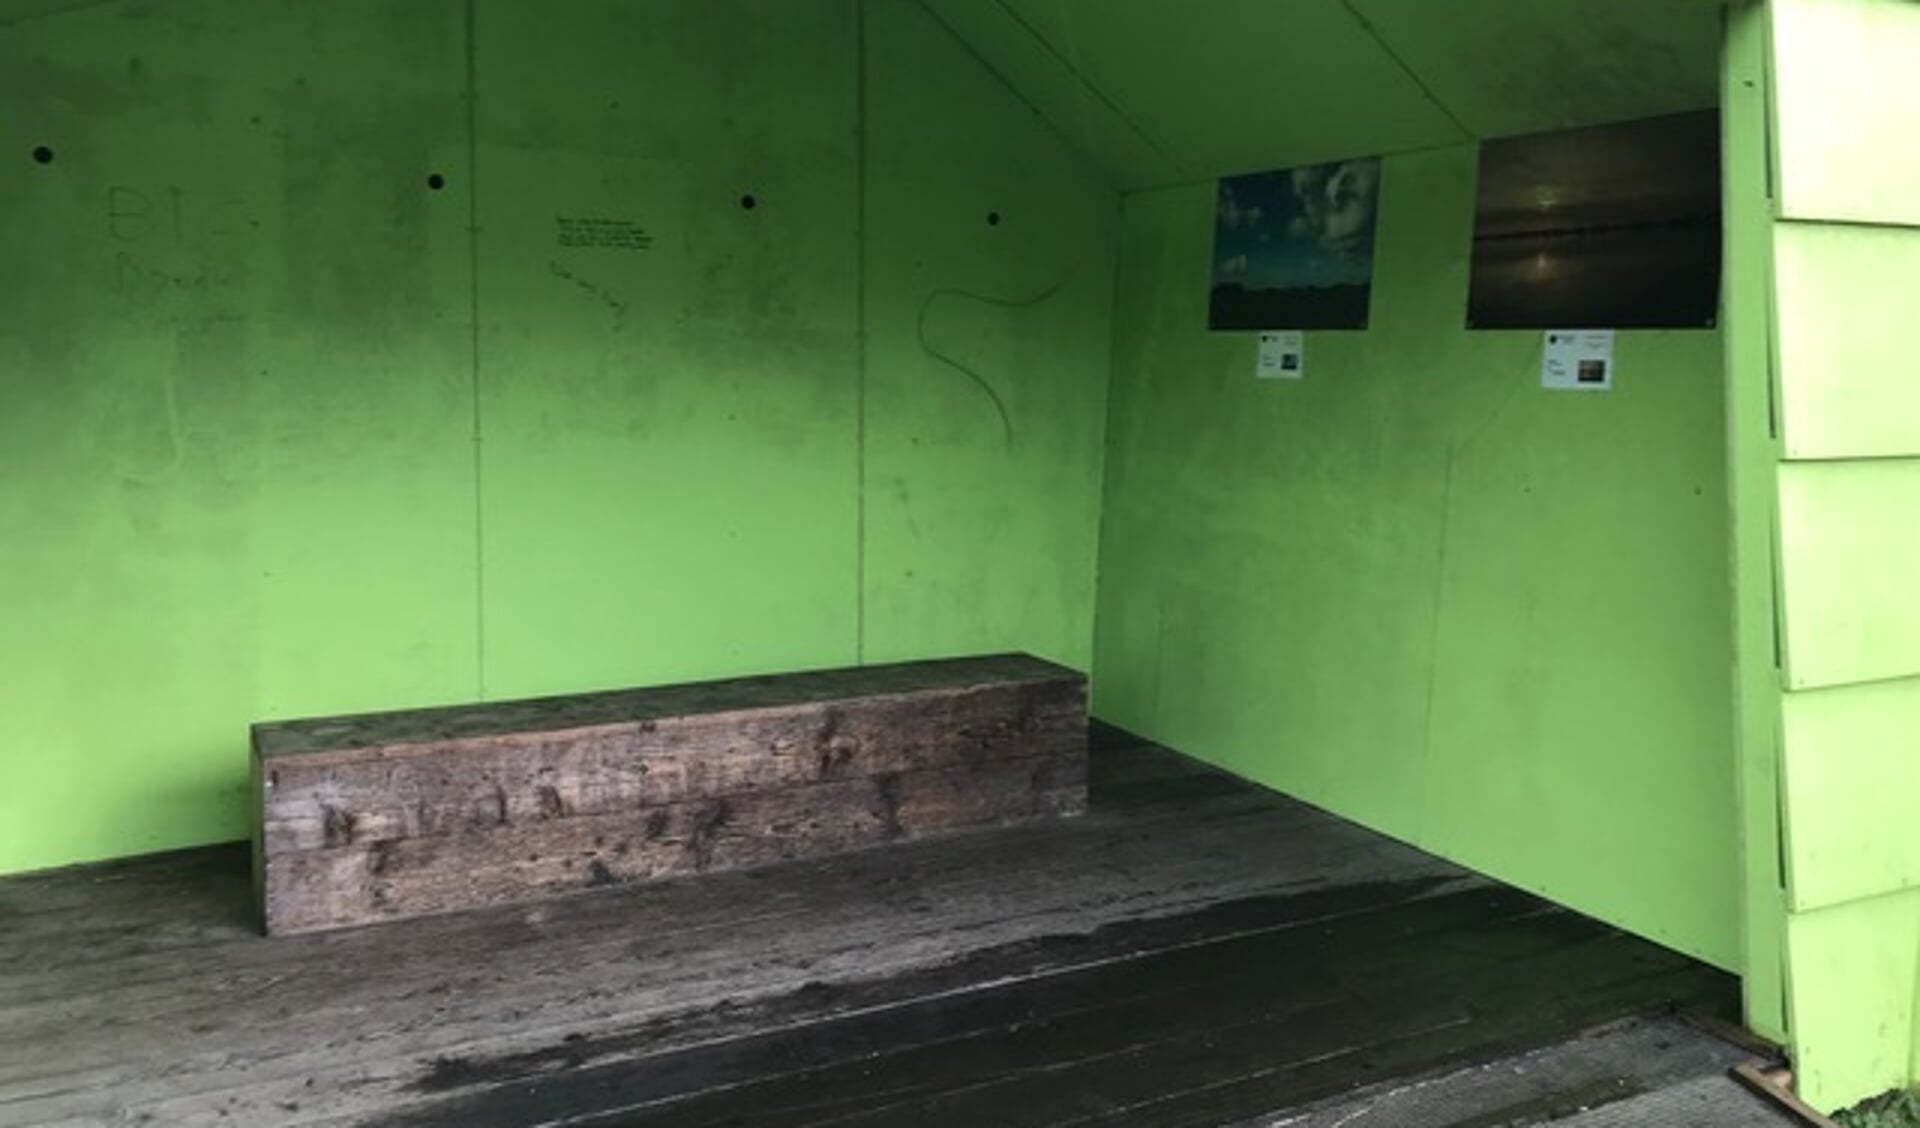 De lege groene muur van het hokje in Park Vijversburg waar de drie gestolen foto's hingen.